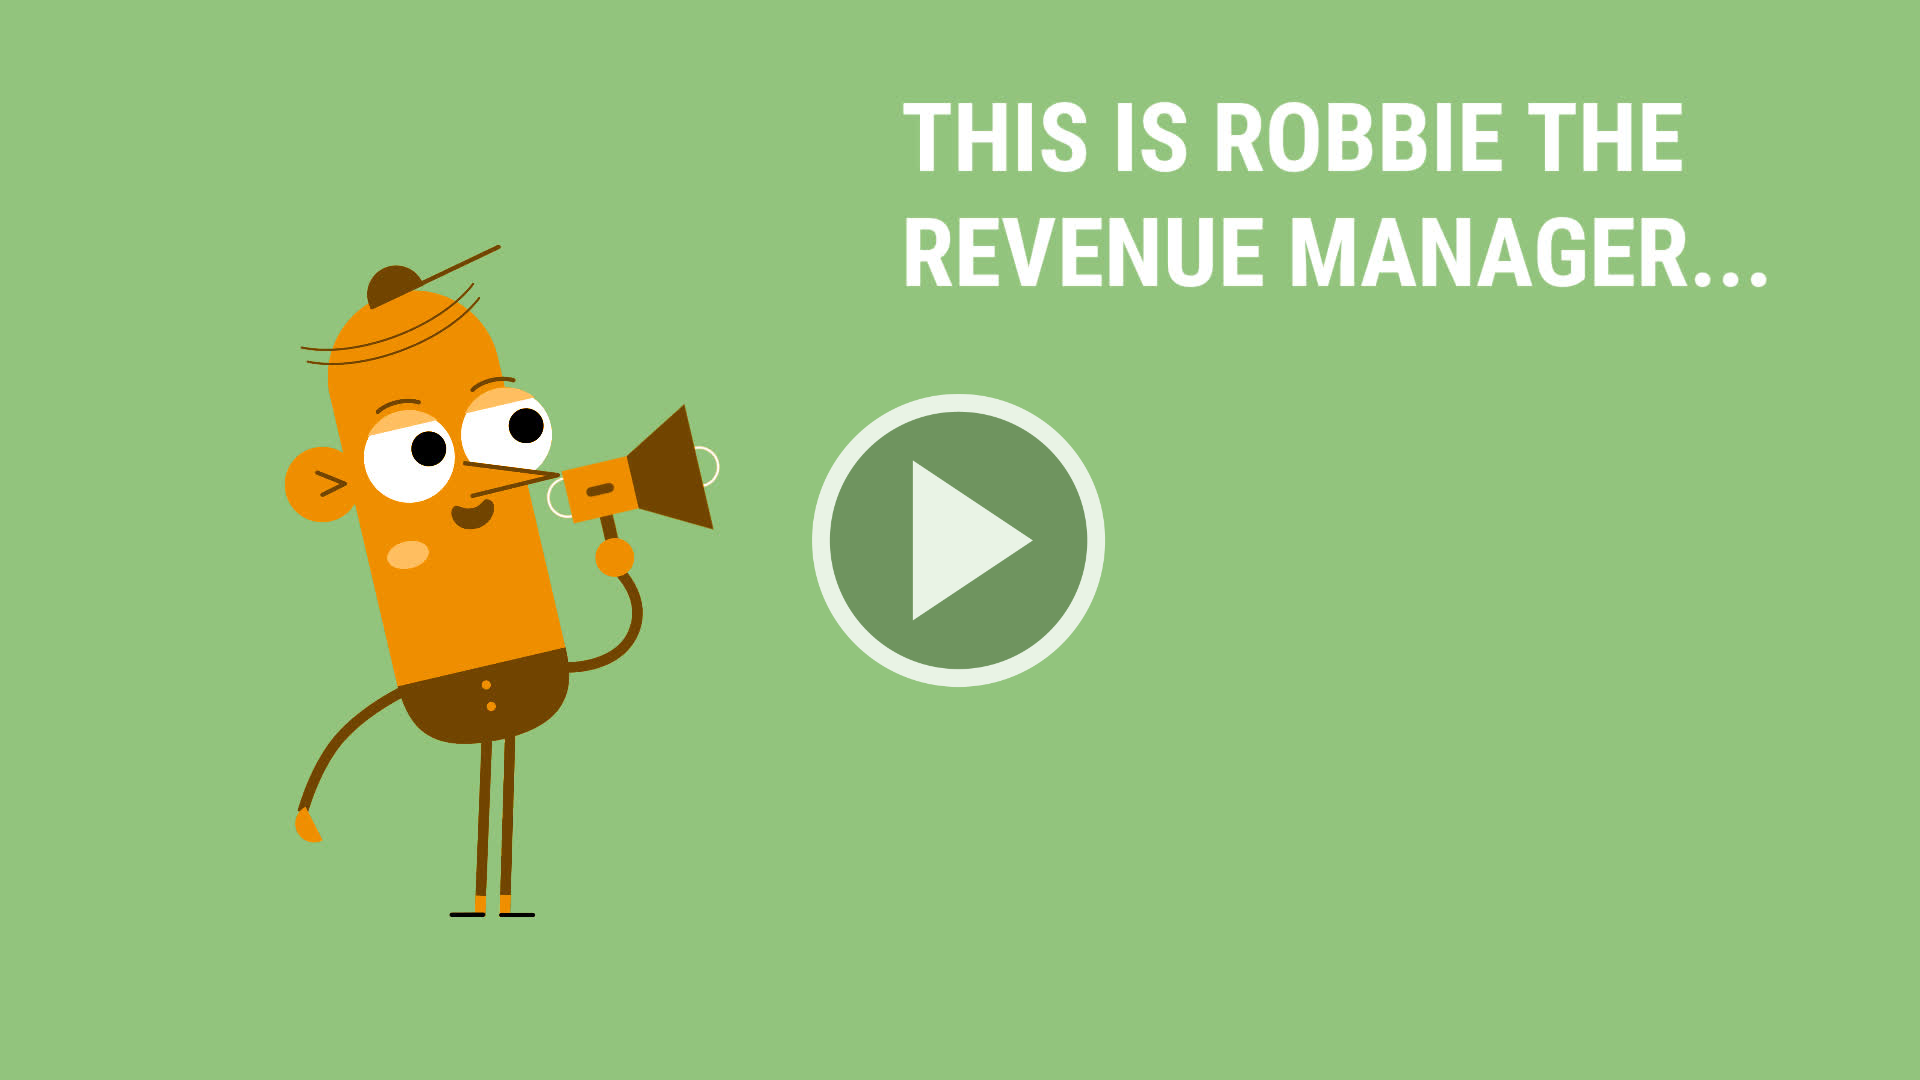 robbie the revenue manager